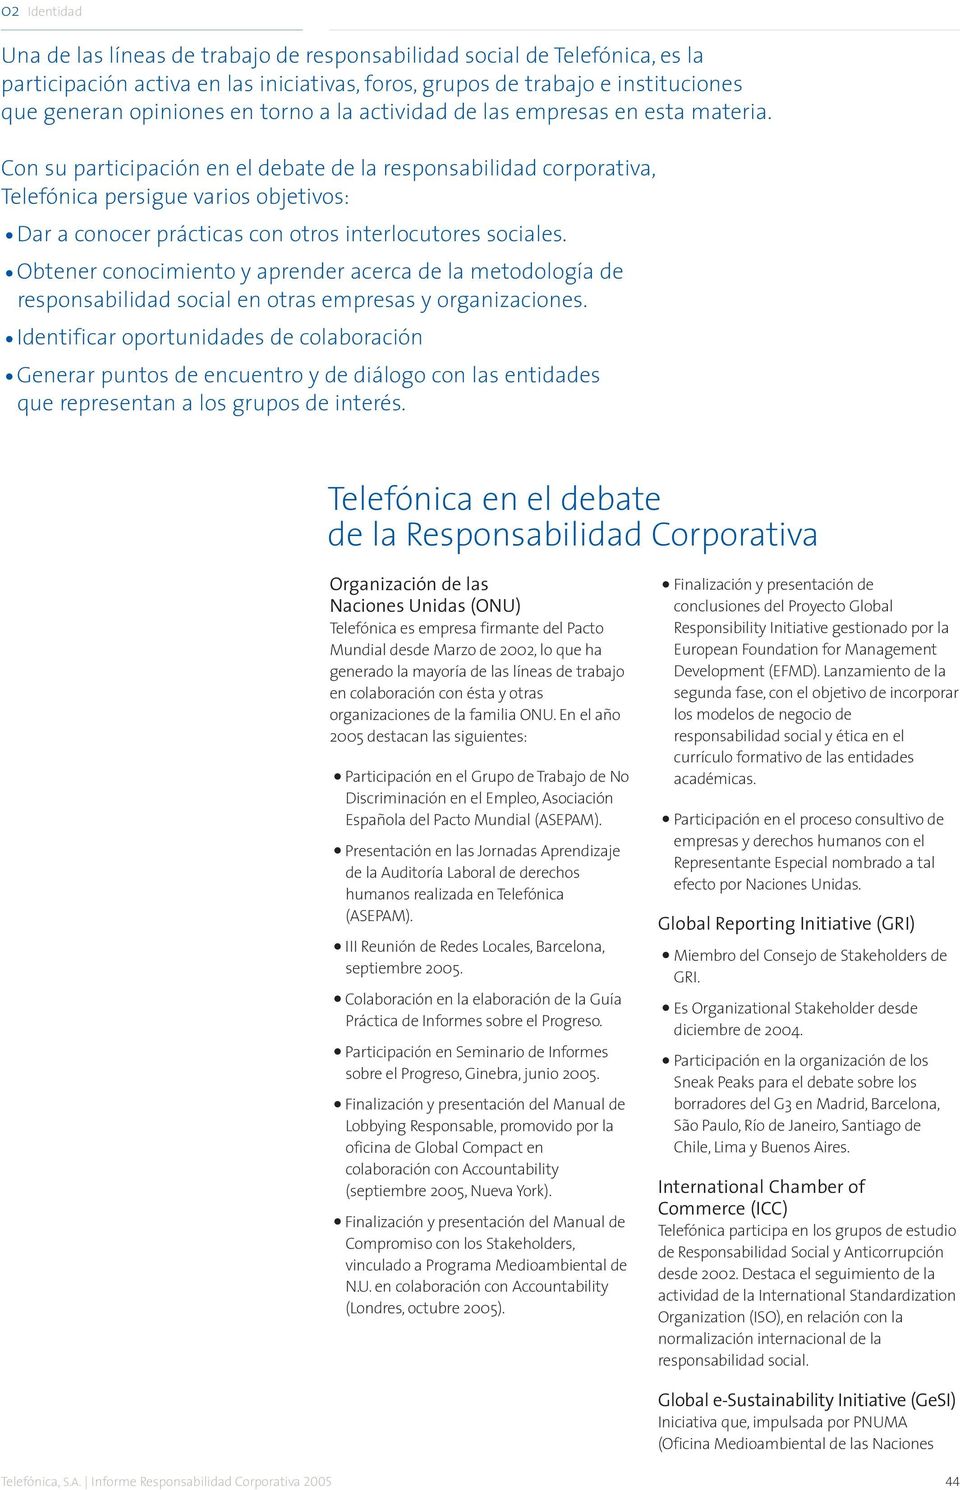 Con su participación en el debate de la responsabilidad corporativa, Telefónica persigue varios objetivos: Dar a conocer prácticas con otros interlocutores sociales.